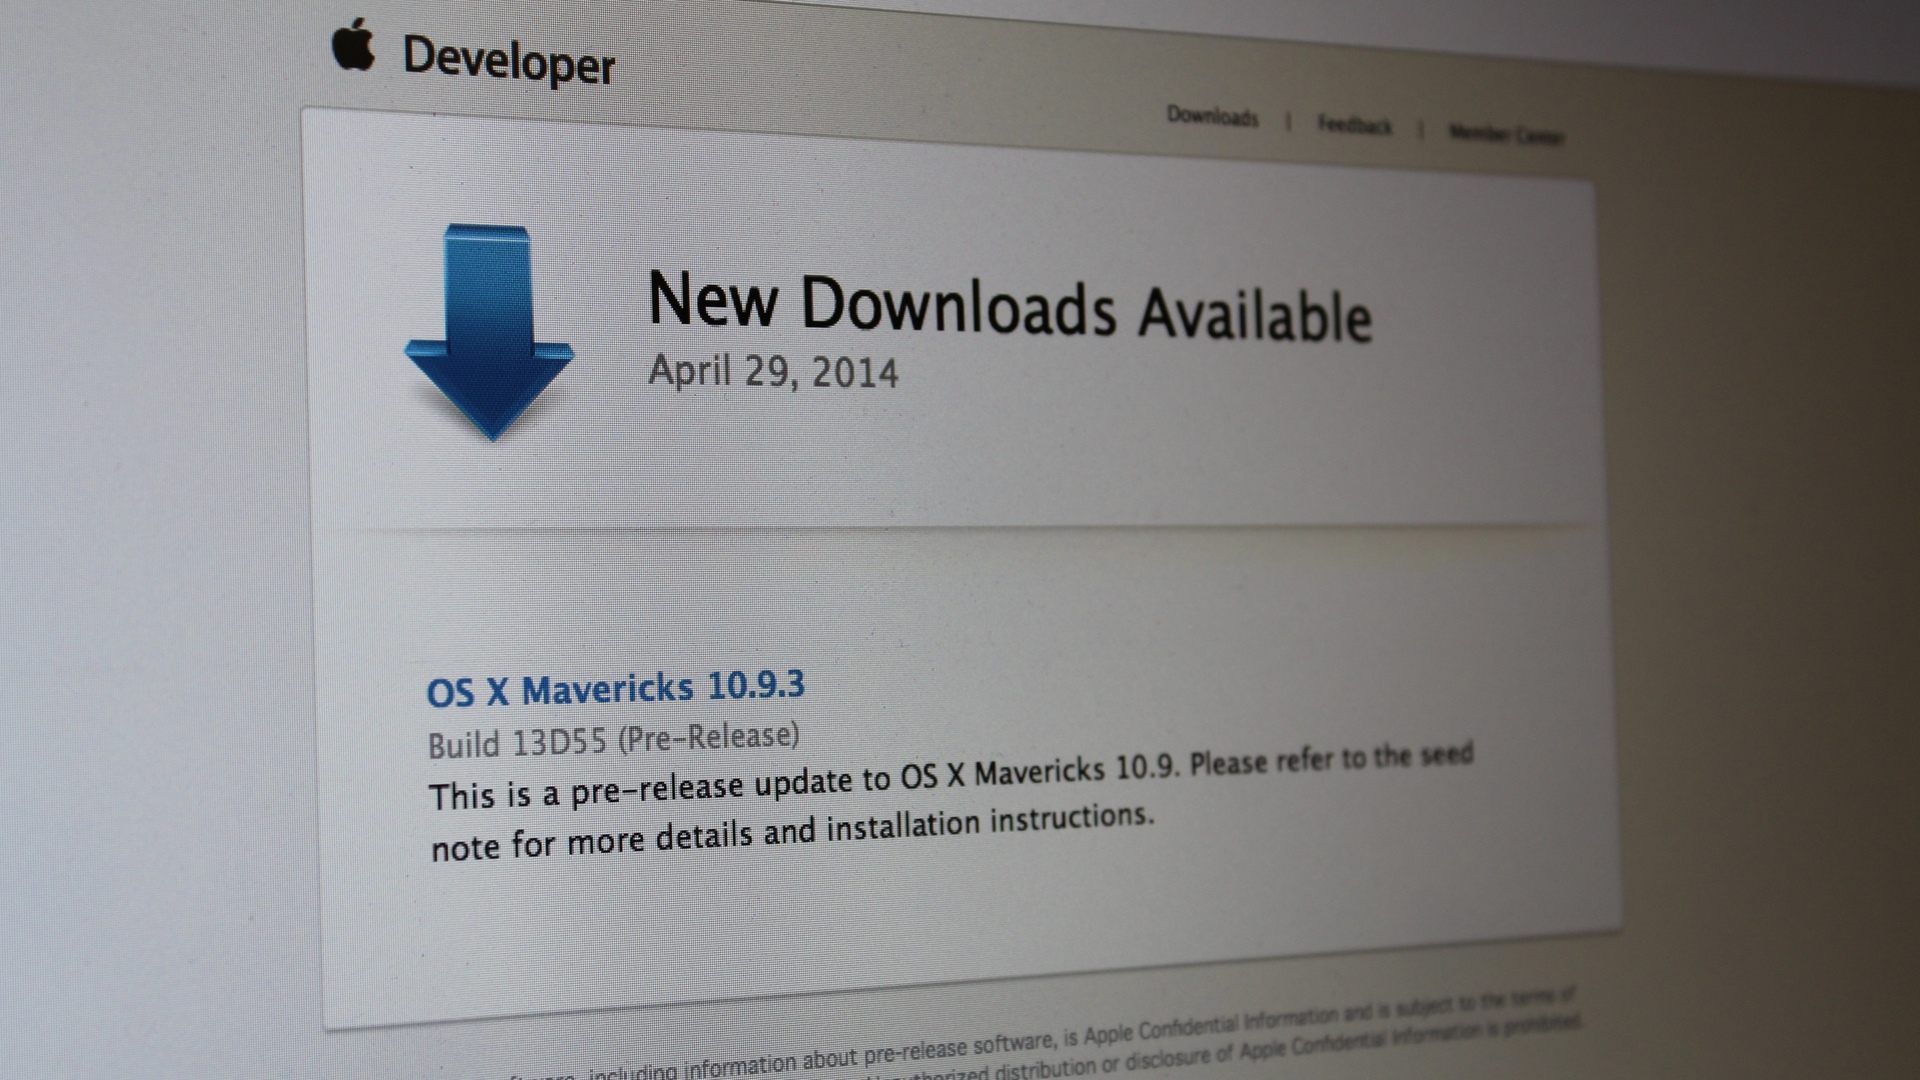 OS X Mavericks 10.9.3 build 13D55